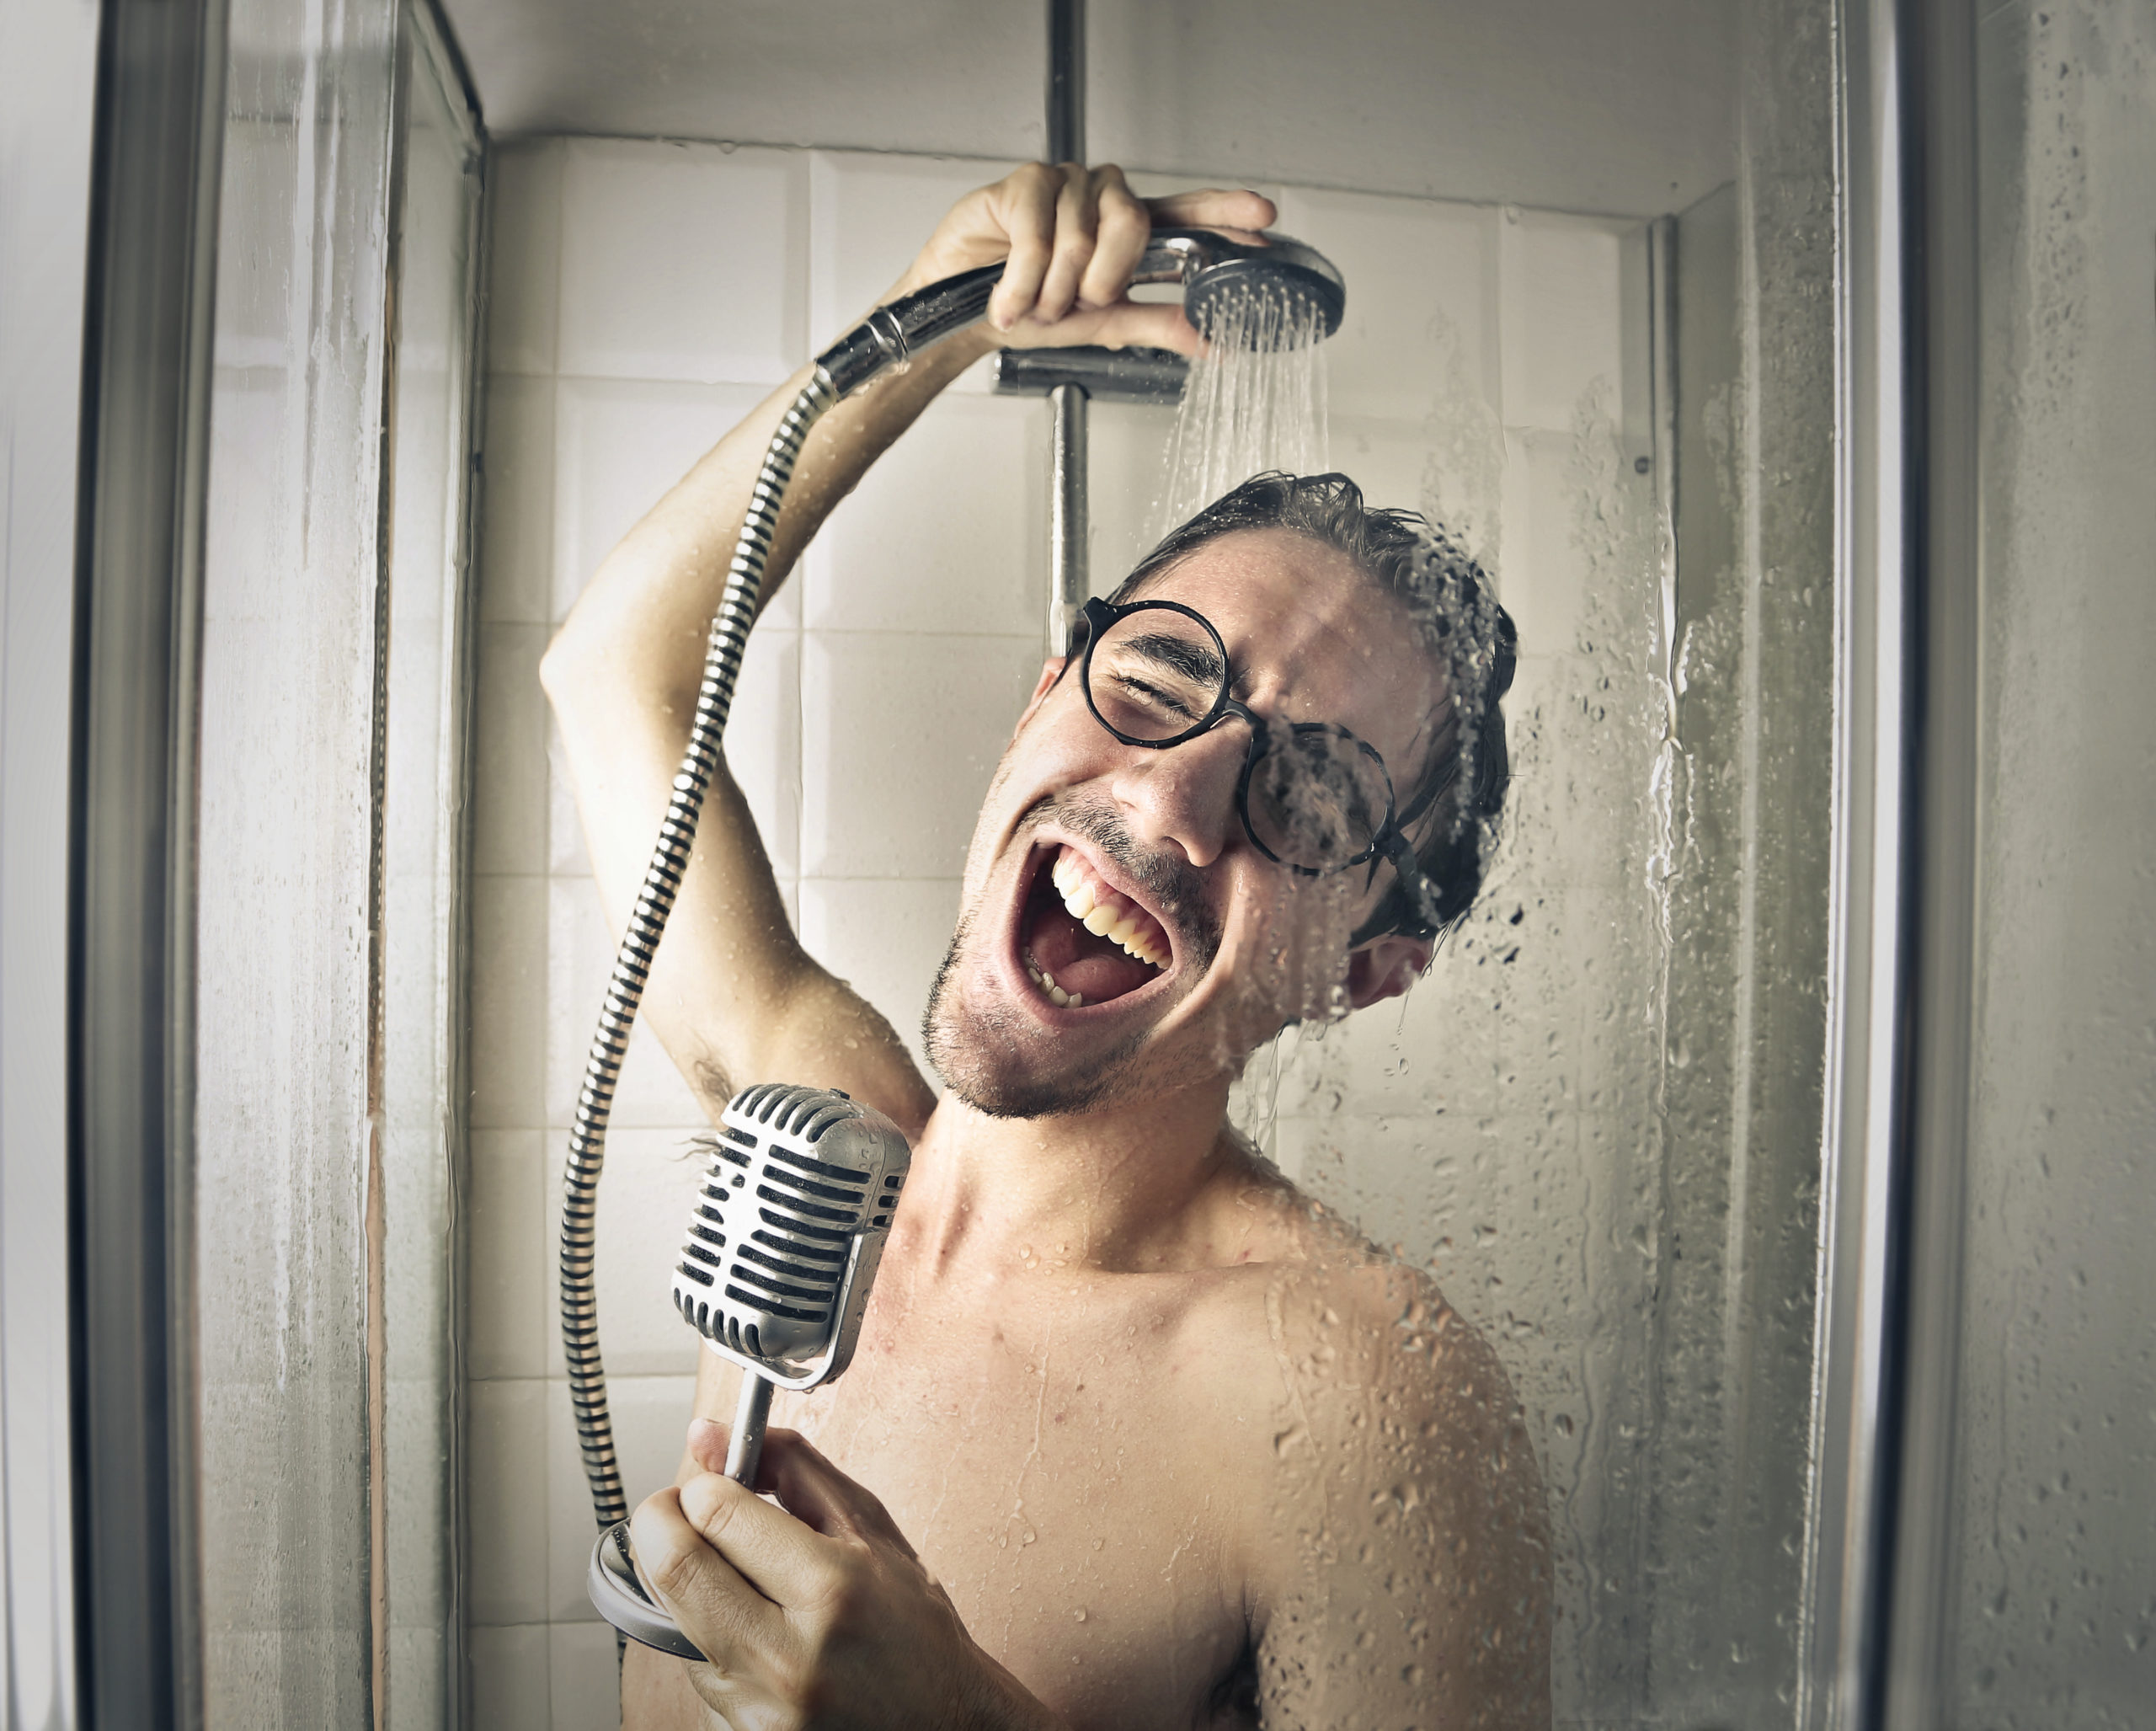 Веселый бодрый песни. Петь в душе. Мужчина поет в душе. Петь в ванной.